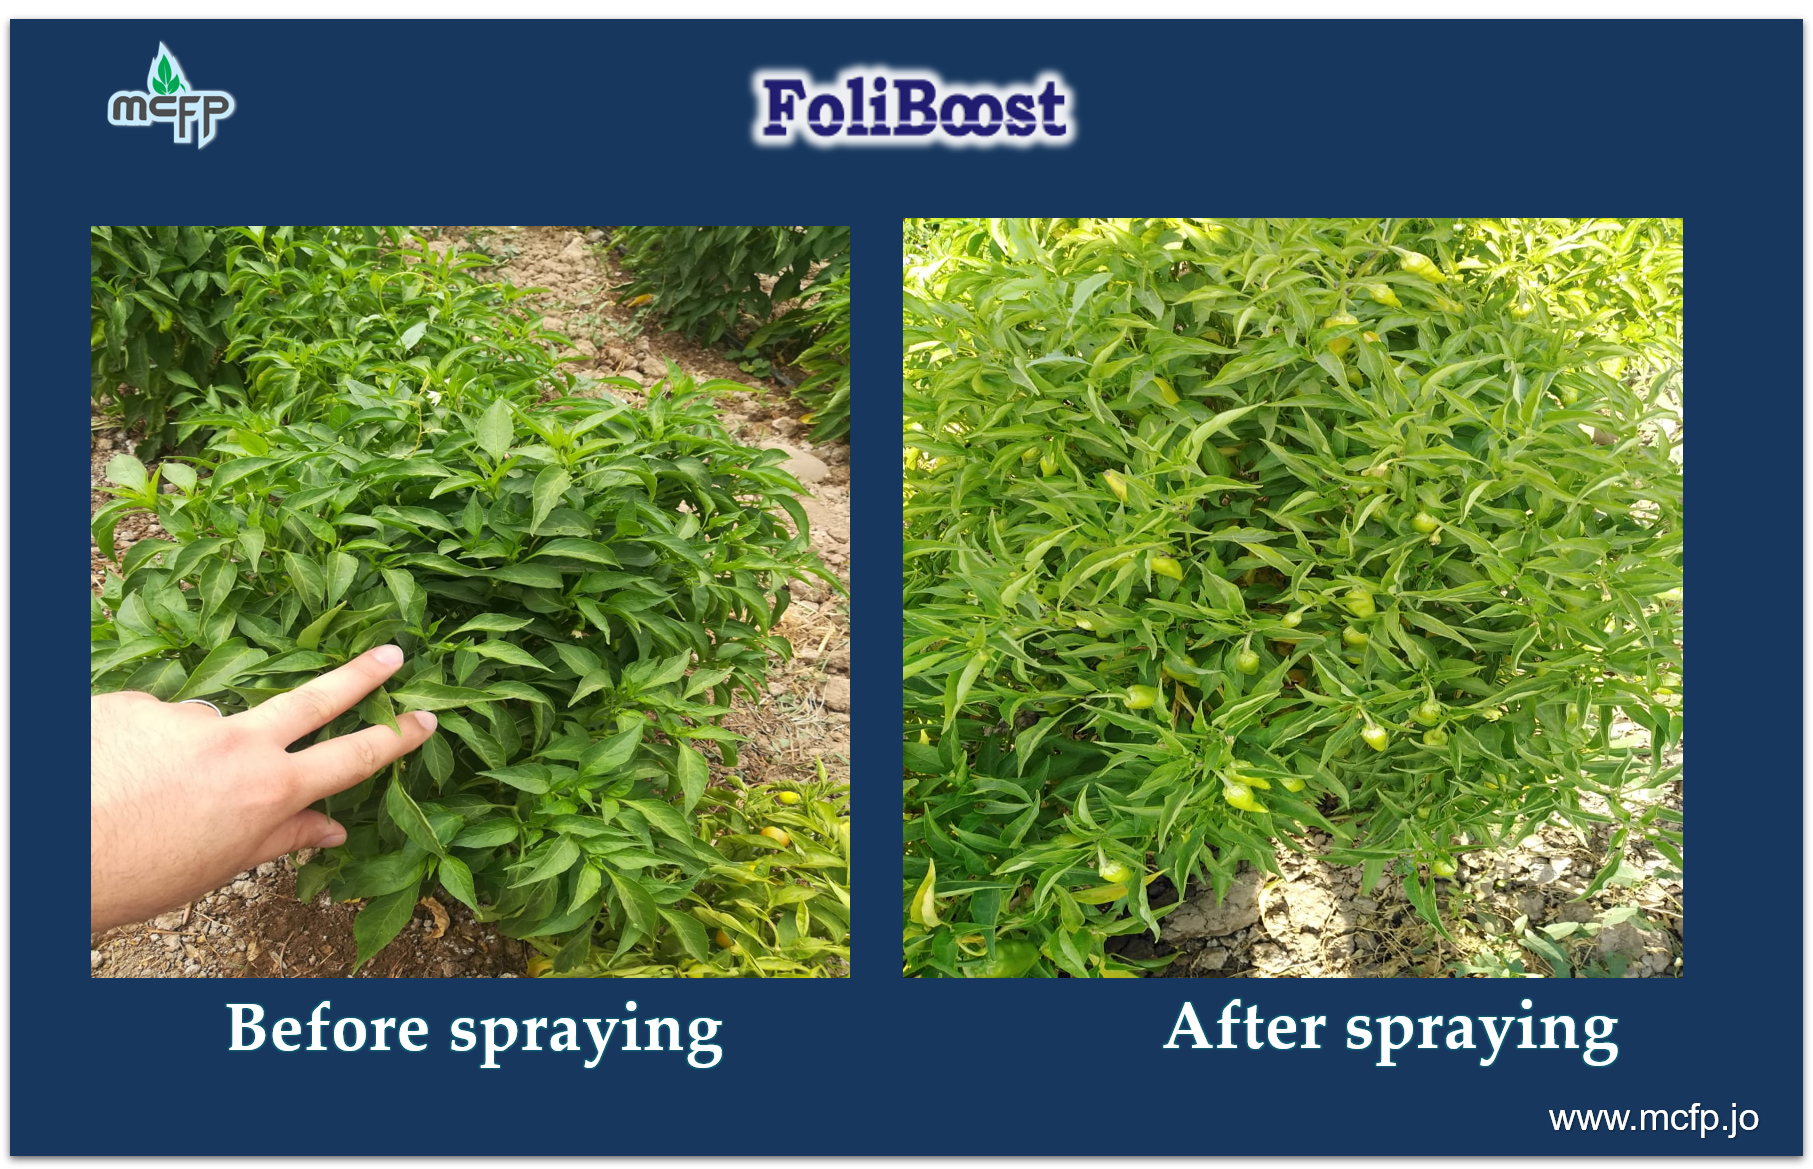 Observations of FoliBoost on pepper crop.